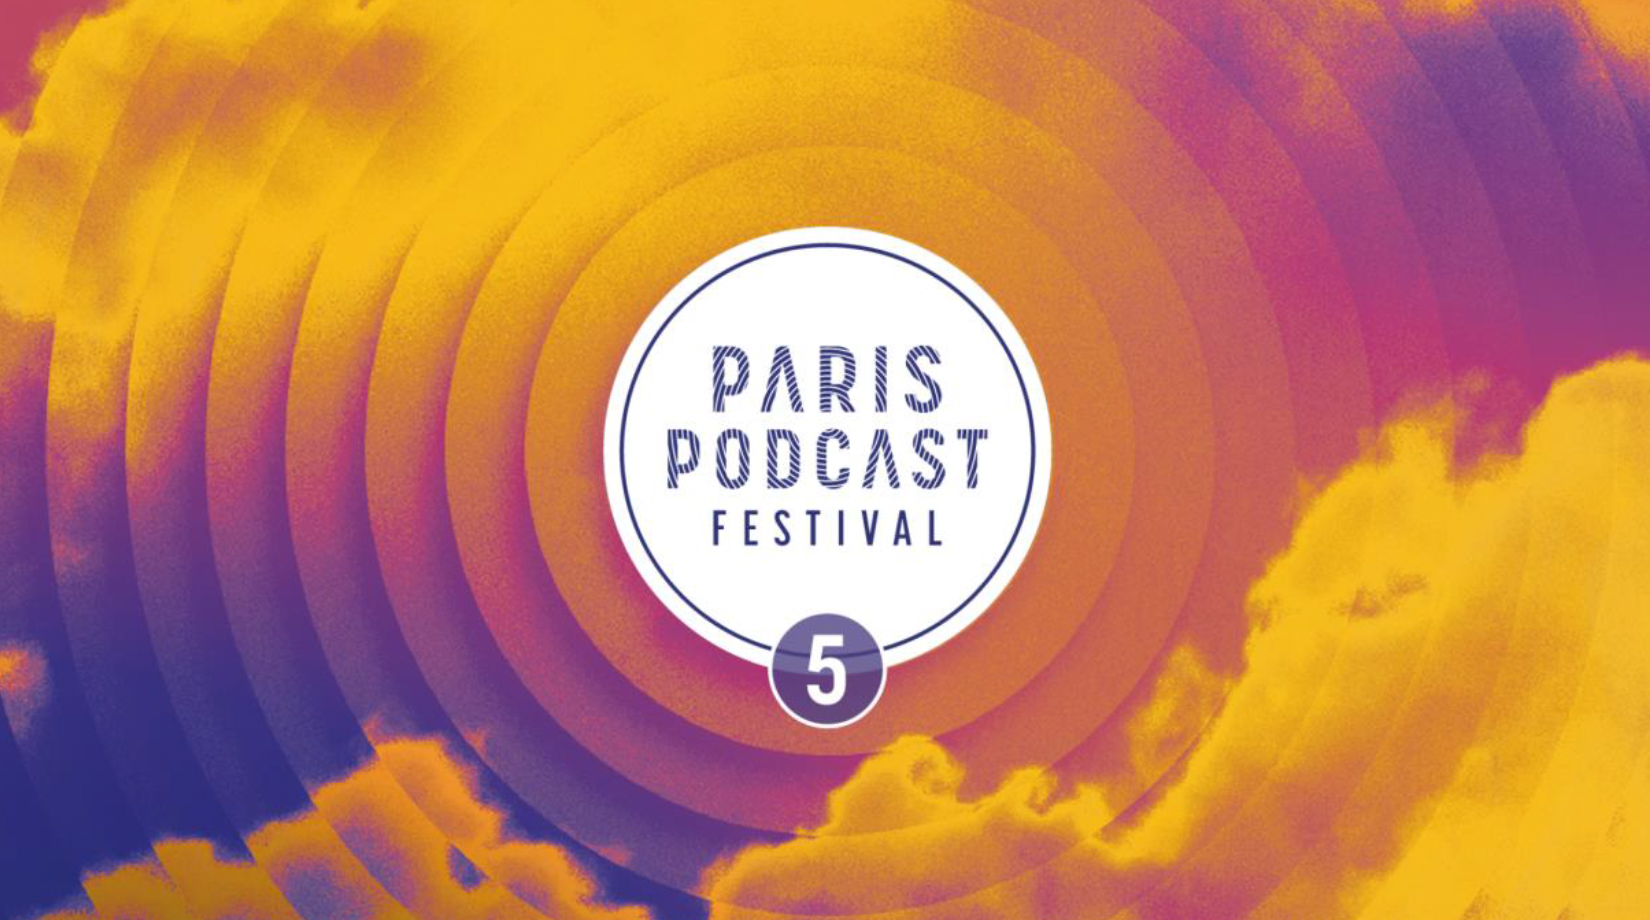 Le Paris Podcast Festival revient pour une 5e édition